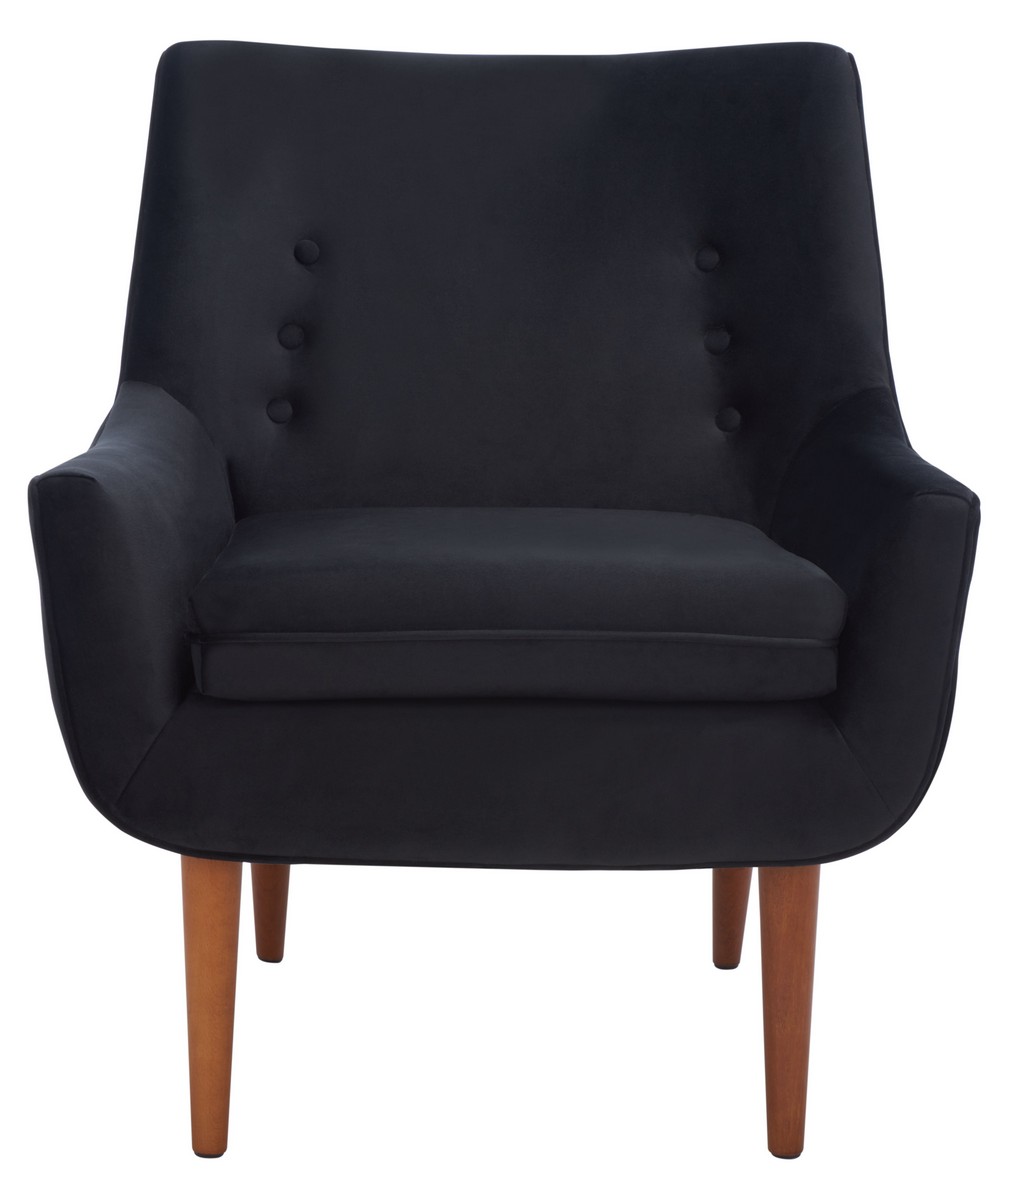 Safavieh ACH1303C 31 x 27 x 30 in. Amina Accent Chair, Black